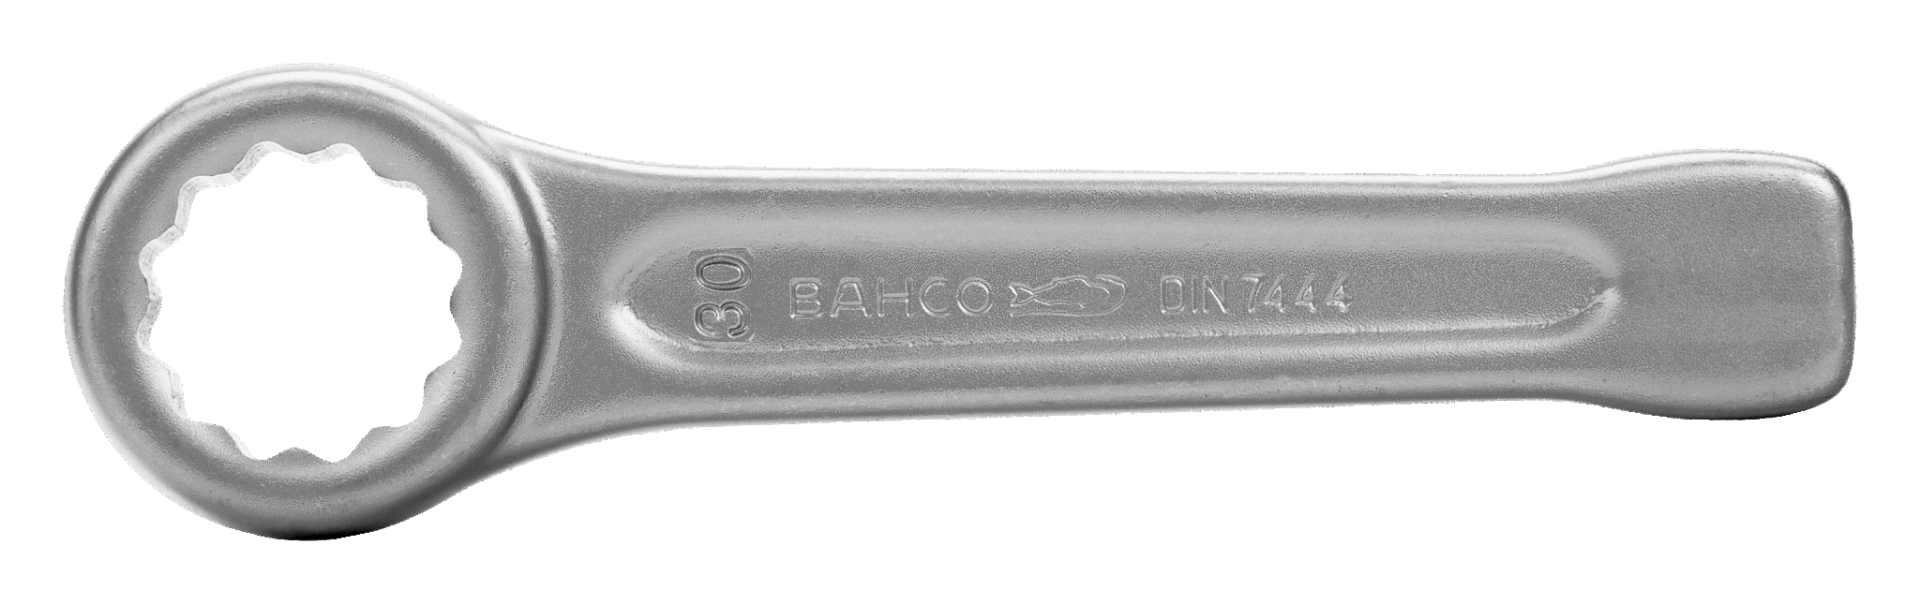 BAHCO(バーコ) 打撃メガネエンドレンチ 27mm 7444SG-M-27